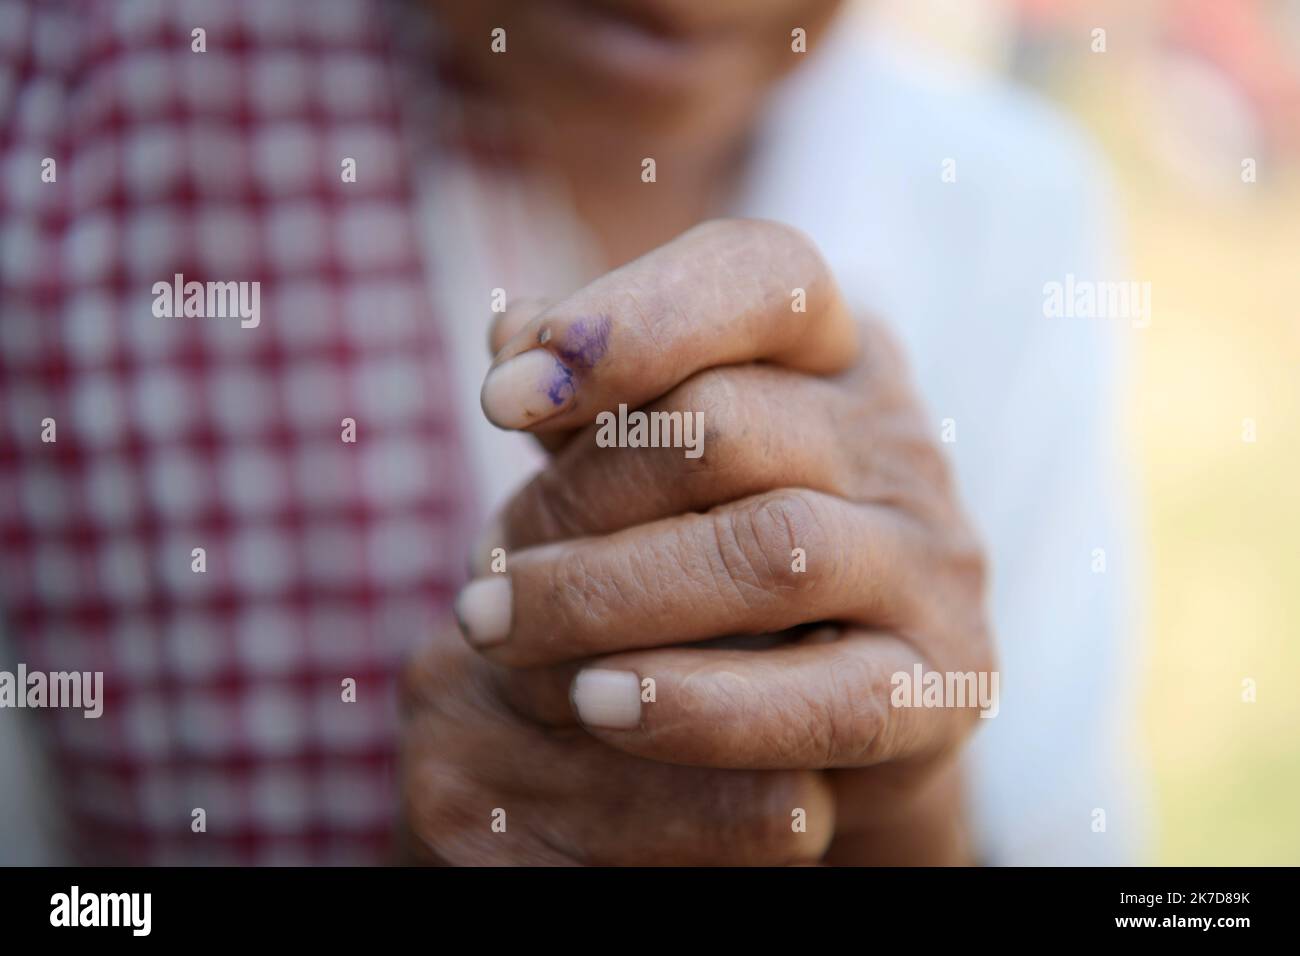 ©Abhisek Saha / Le Pictorium/MAXPPP - Abhisek Saha / Le Pictorium - 6/4/2021 - Inde / Tripura / Agartala - Une femme tribale montre son doigt marque a l'encre apres avoir vote dans un bureau de vote lors des elections du TTAADC, dans la banlieue d'Agartala. / 6/4/2021 - India / Tripura / Agartala - A Tribal woman shows her finger marked with ink after casting her vote at a polling station during TTAADC elections on the outskirts of Agartala Stock Photo